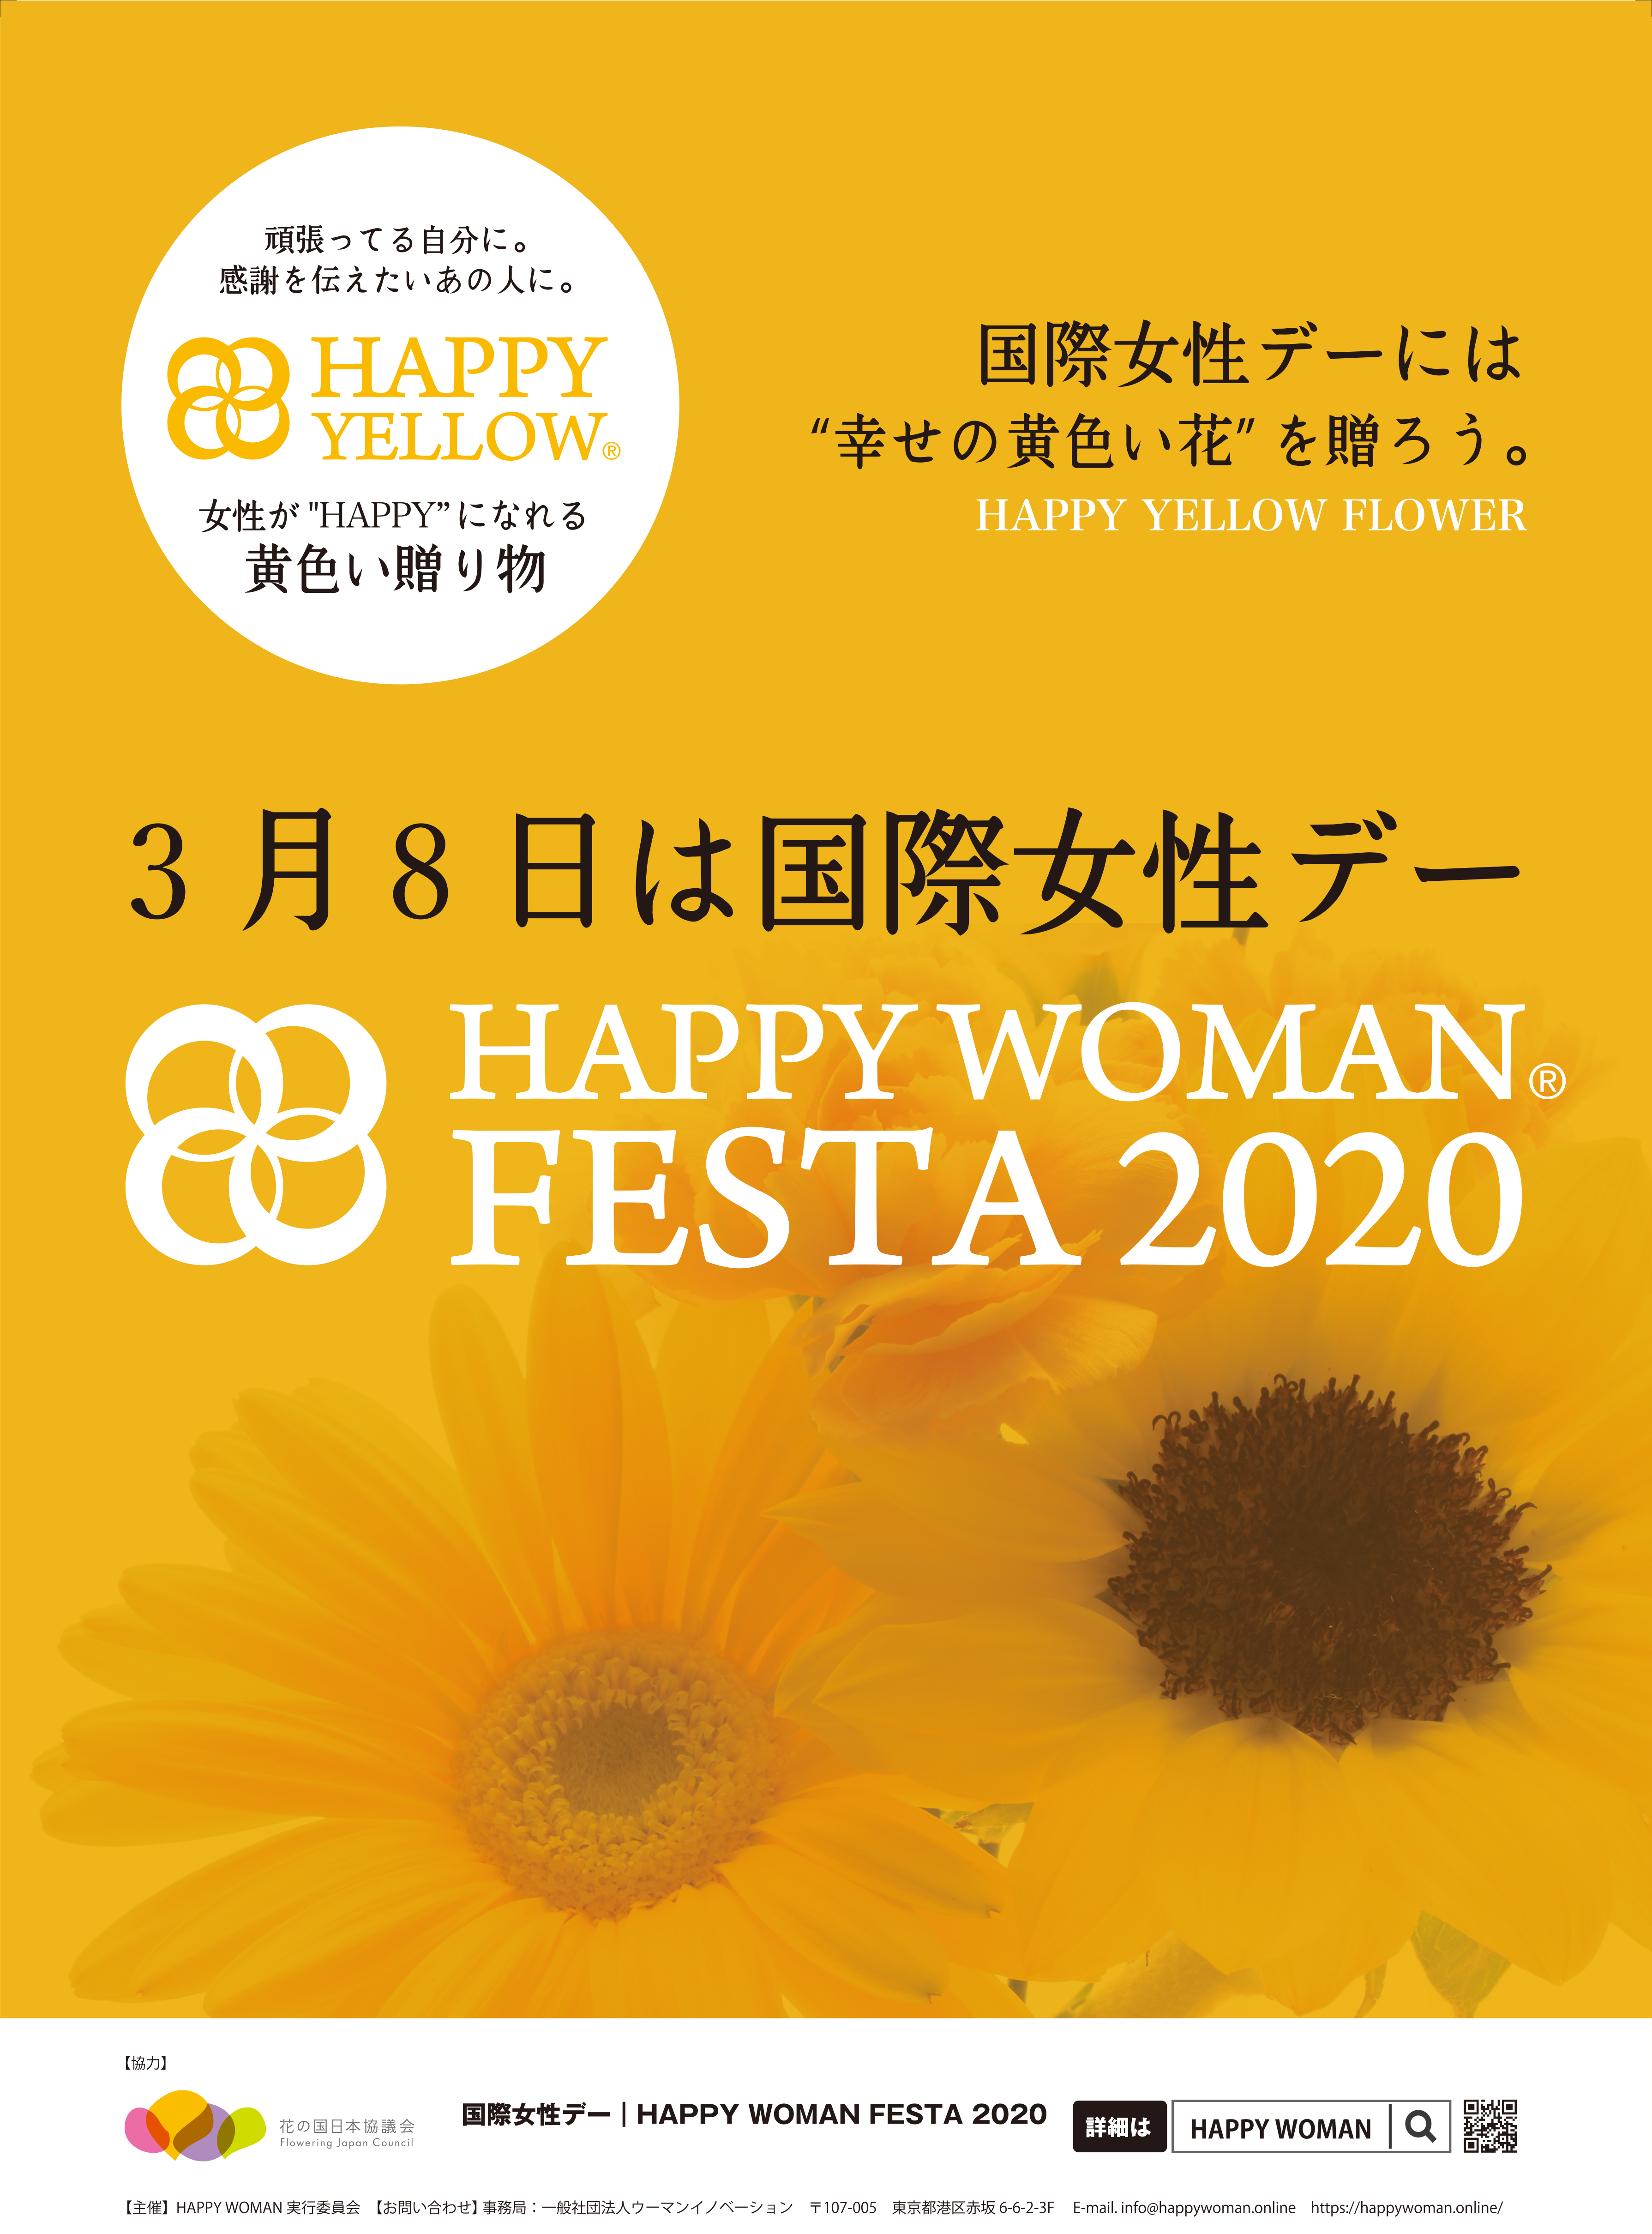 国際女性デーには、”幸せの黄色い花”を贈ろう